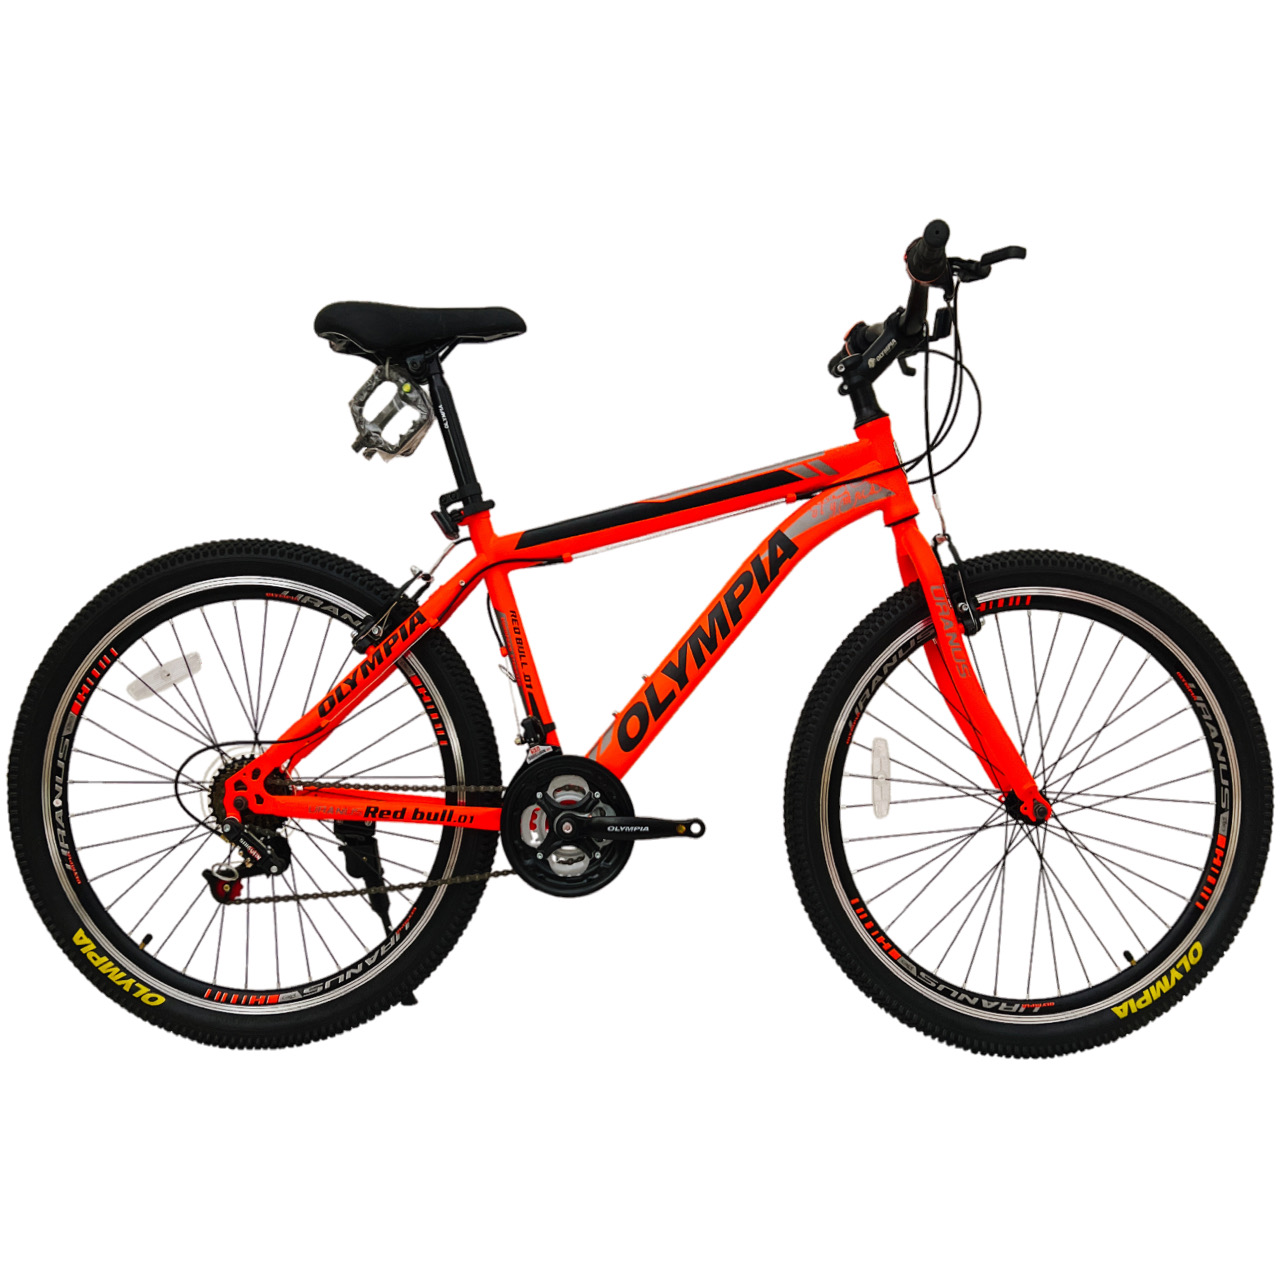 نکته خرید - قیمت روز دوچرخه شهری المپیا مدل RED BULL 01 کد 1 سایز طوقه 26 خرید